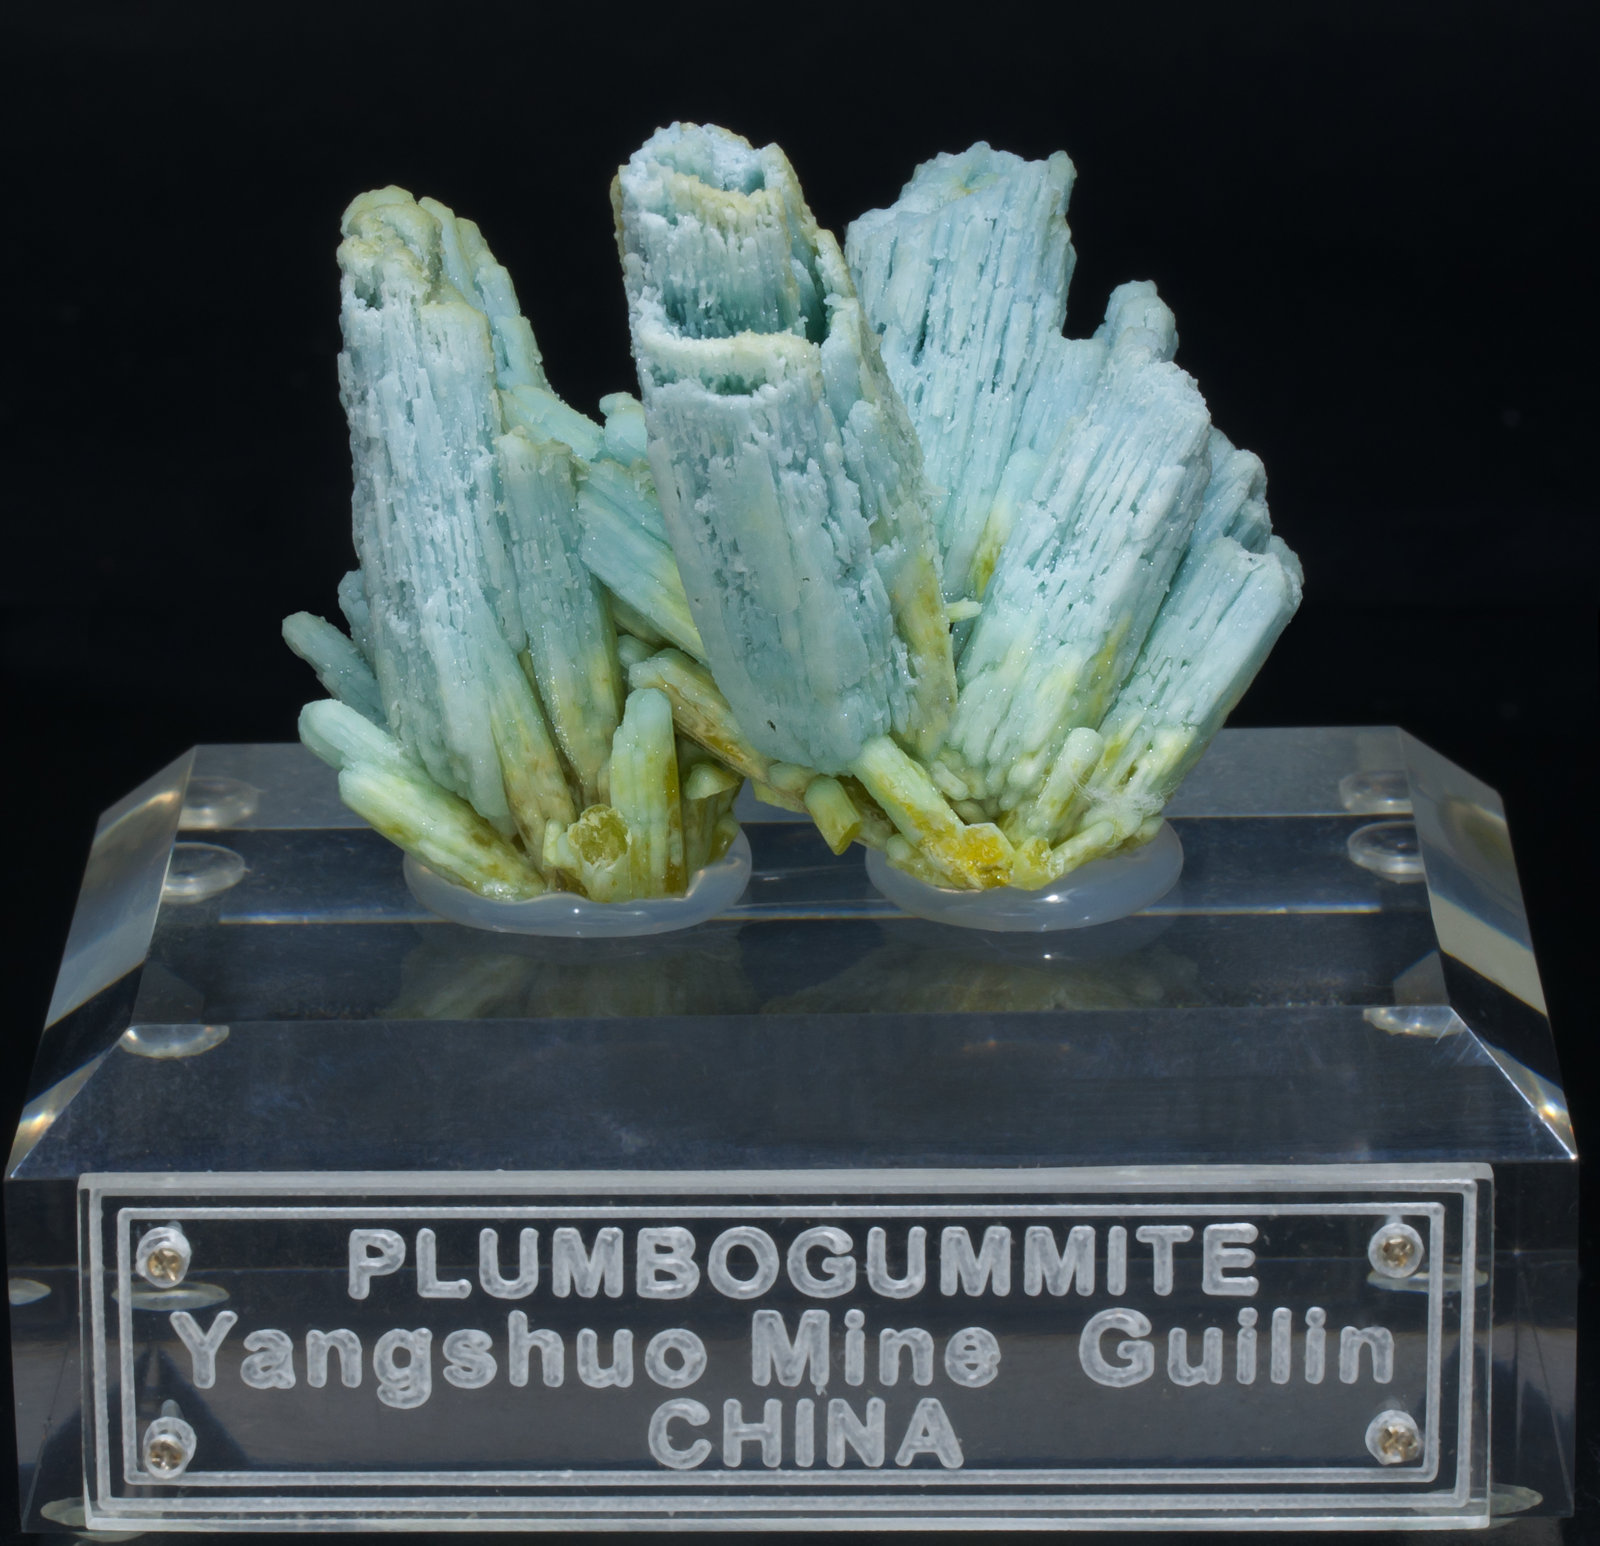 specimens/s_imagesAC3/Plumbogummite-TQ6AC3f1.jpg